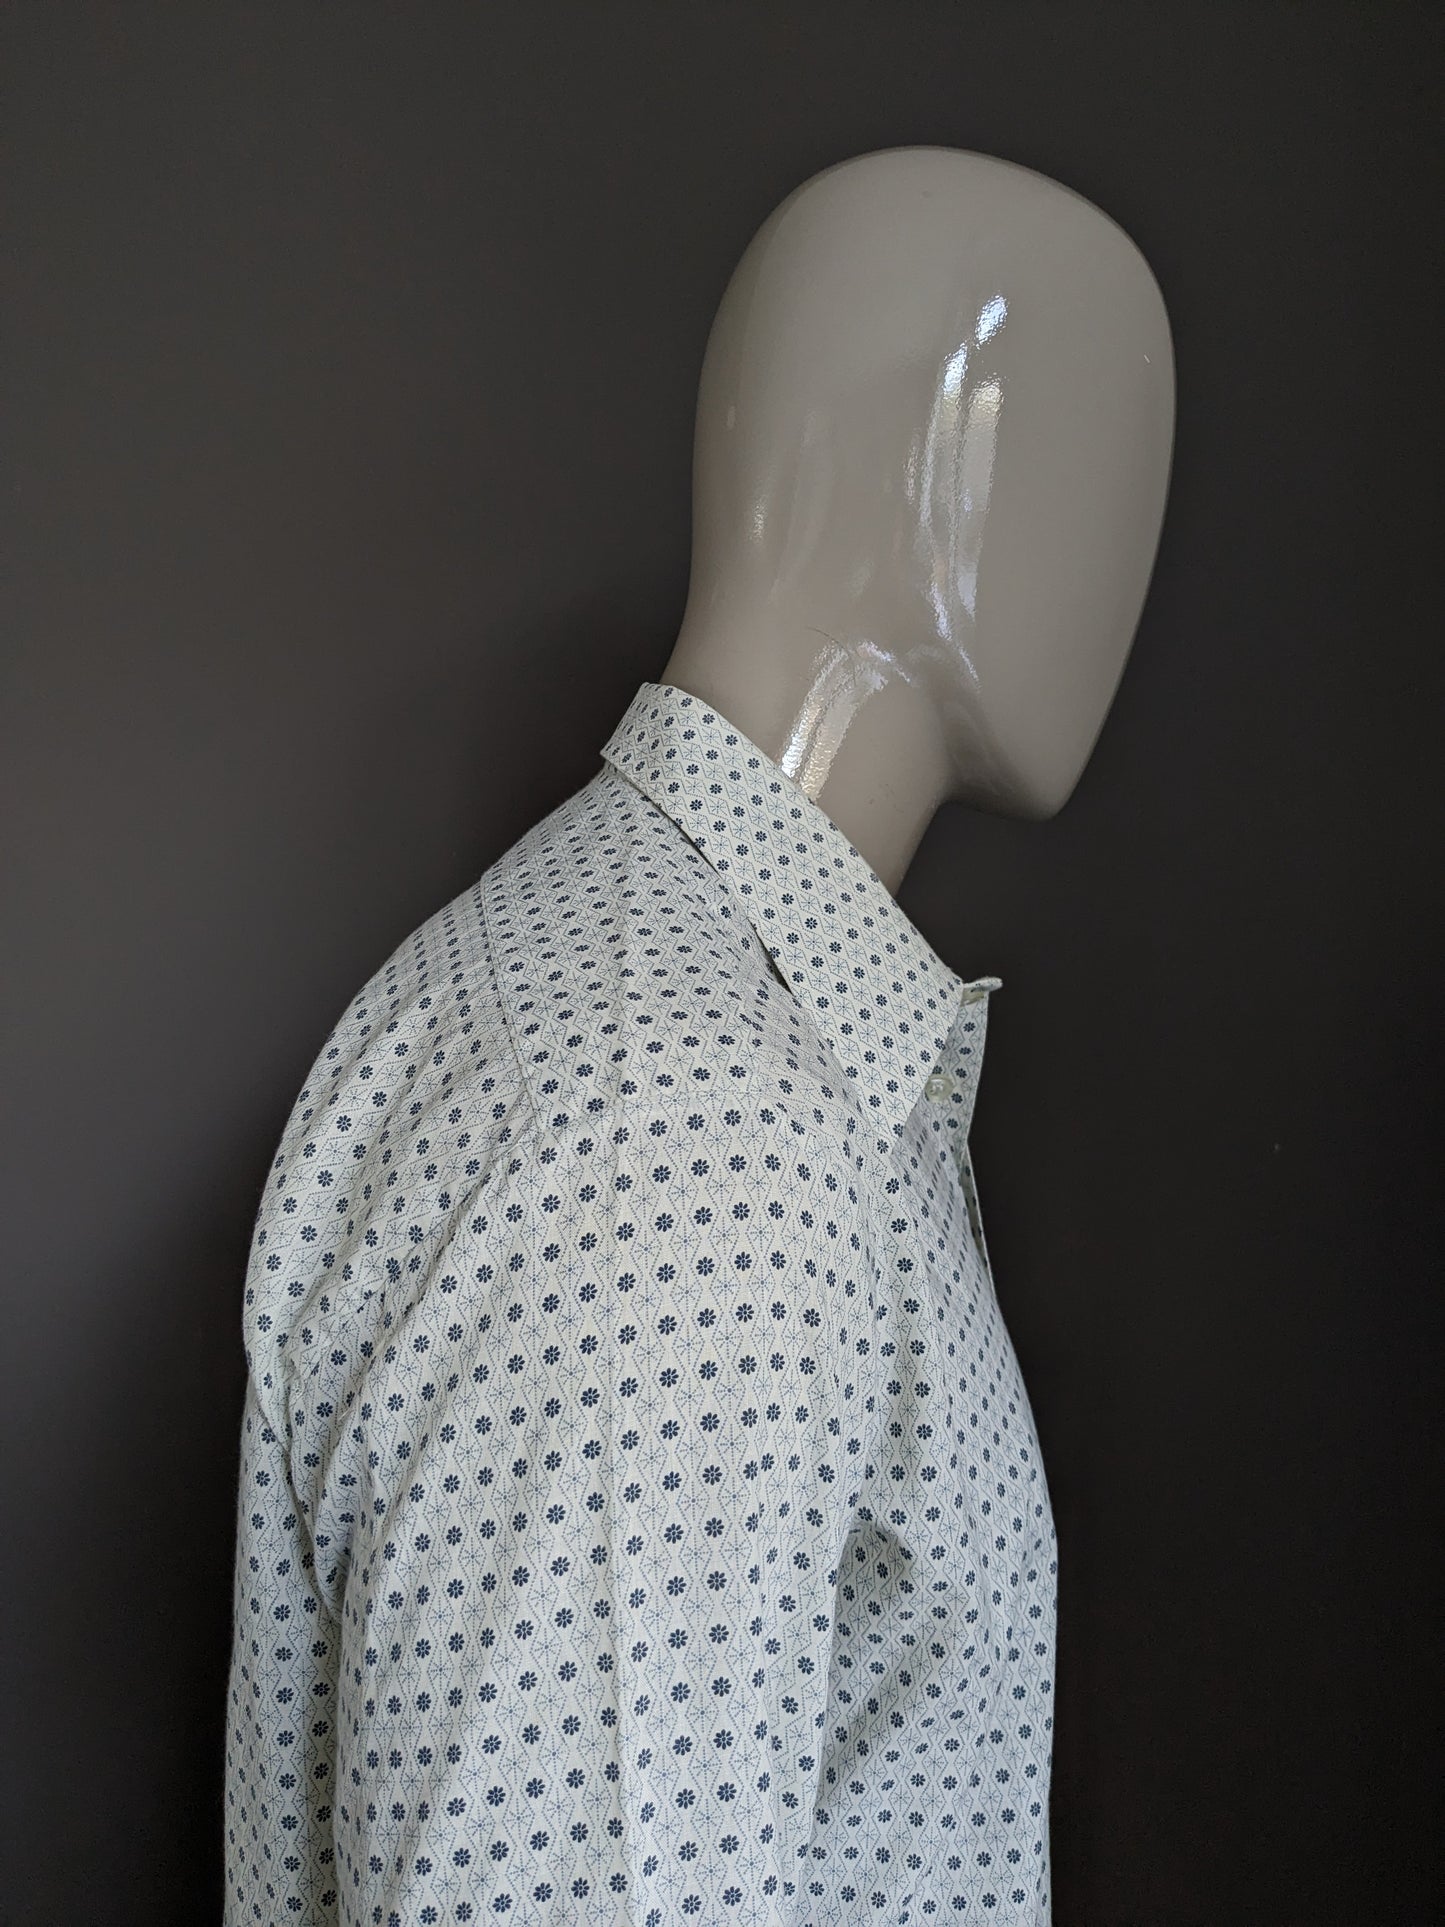 Camisa Vintage Fabio 70 con cuello de punto. Beige gris floral. Tamaño xl.